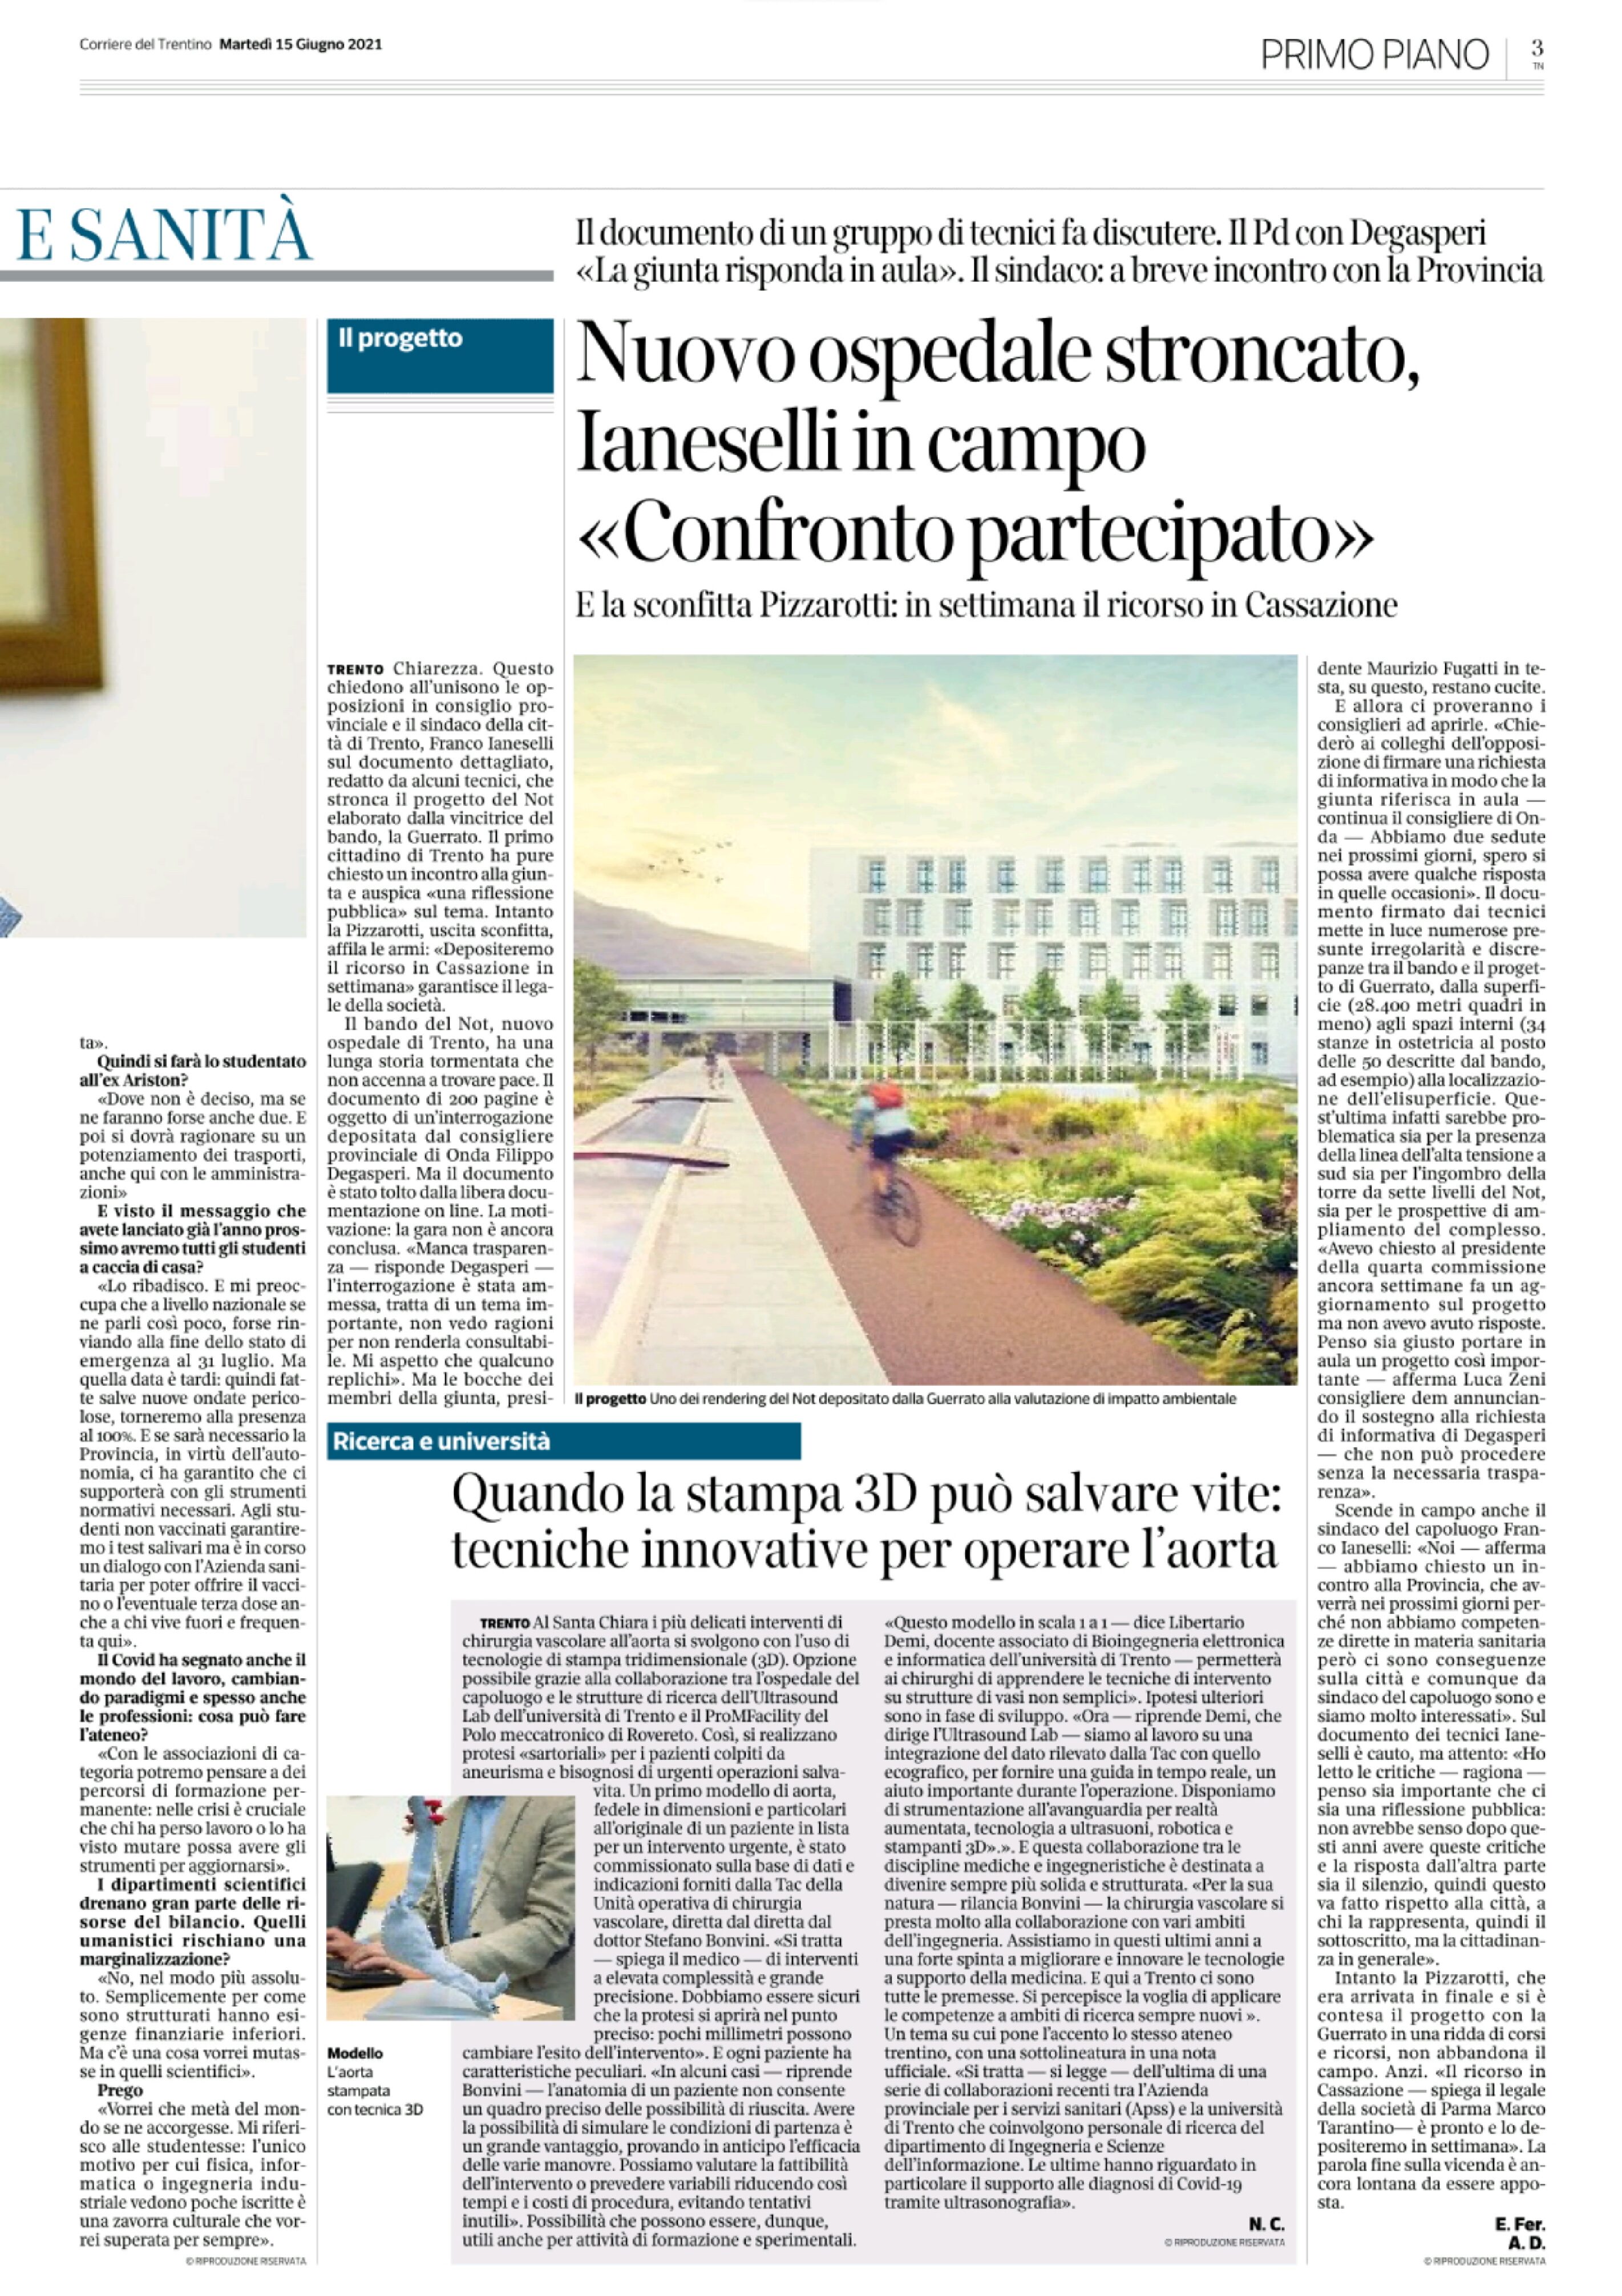 Trento: nuovo ospedale stroncato, Ianeselli in campo “confronto partecipato”